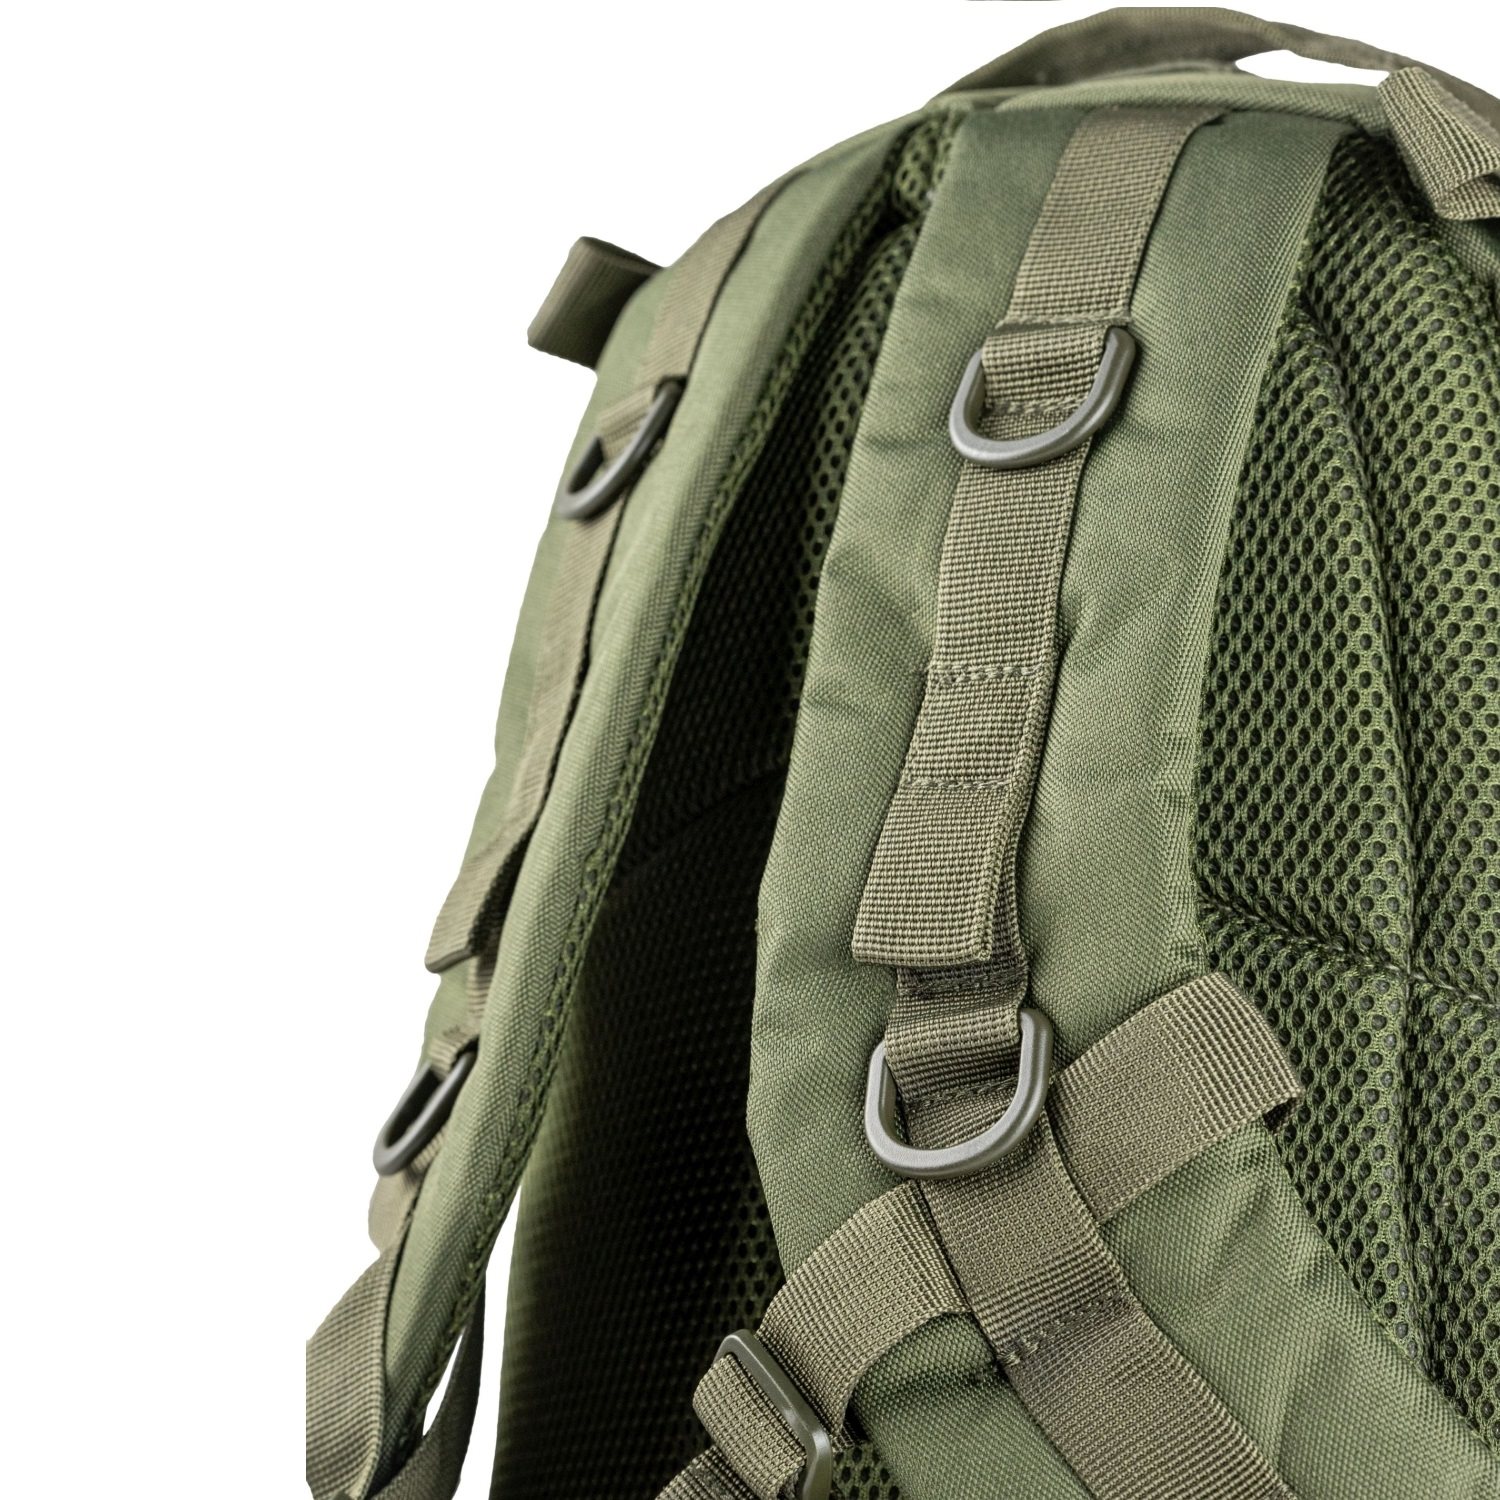 SPECIAL OPS 45L Backpack OLIVE Viper® VRUCSPECOG L-11